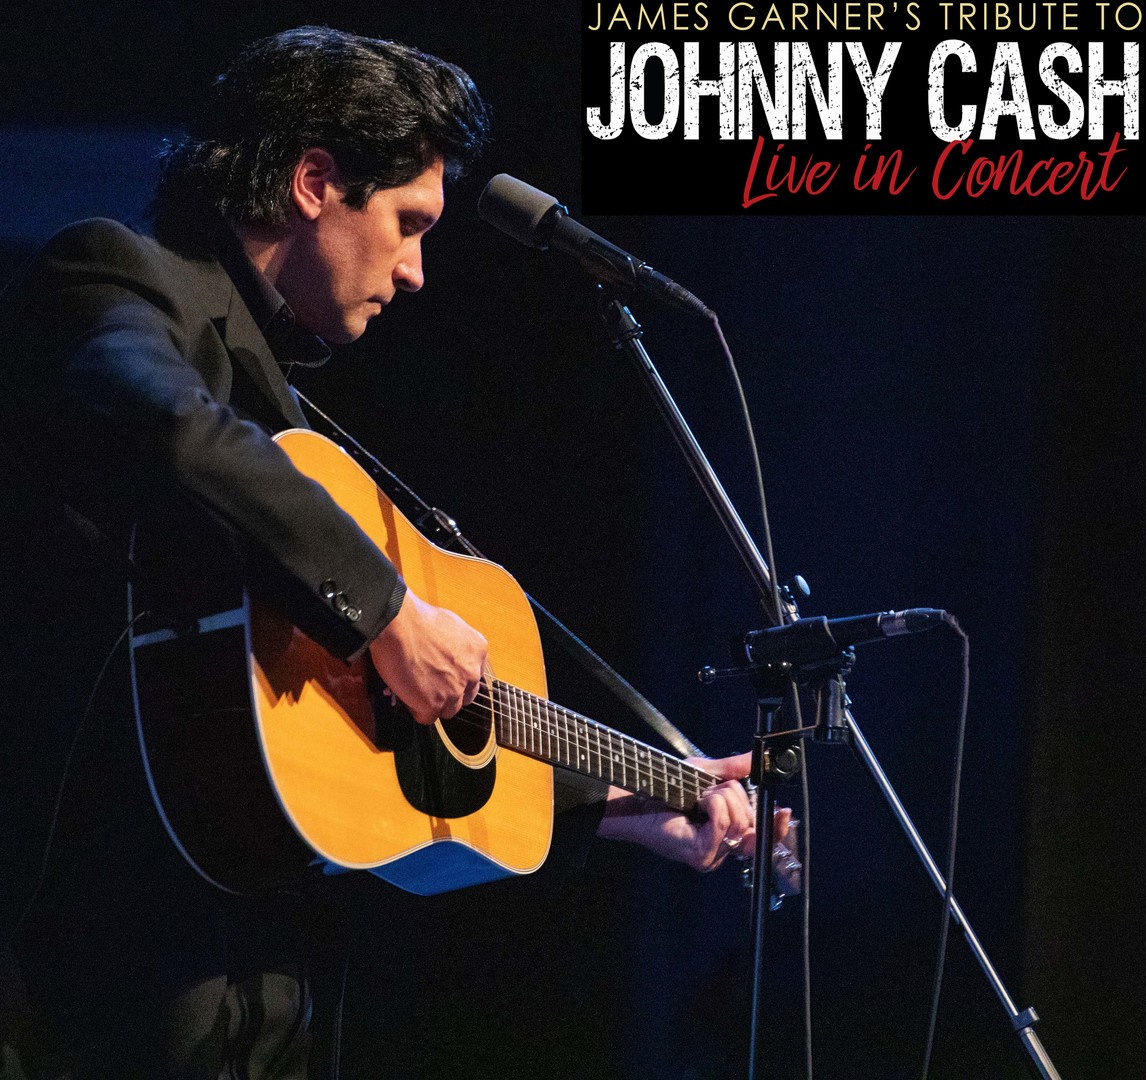 James Garner's Tribute to Johnny Cash, DeWitt, Iowa, United States